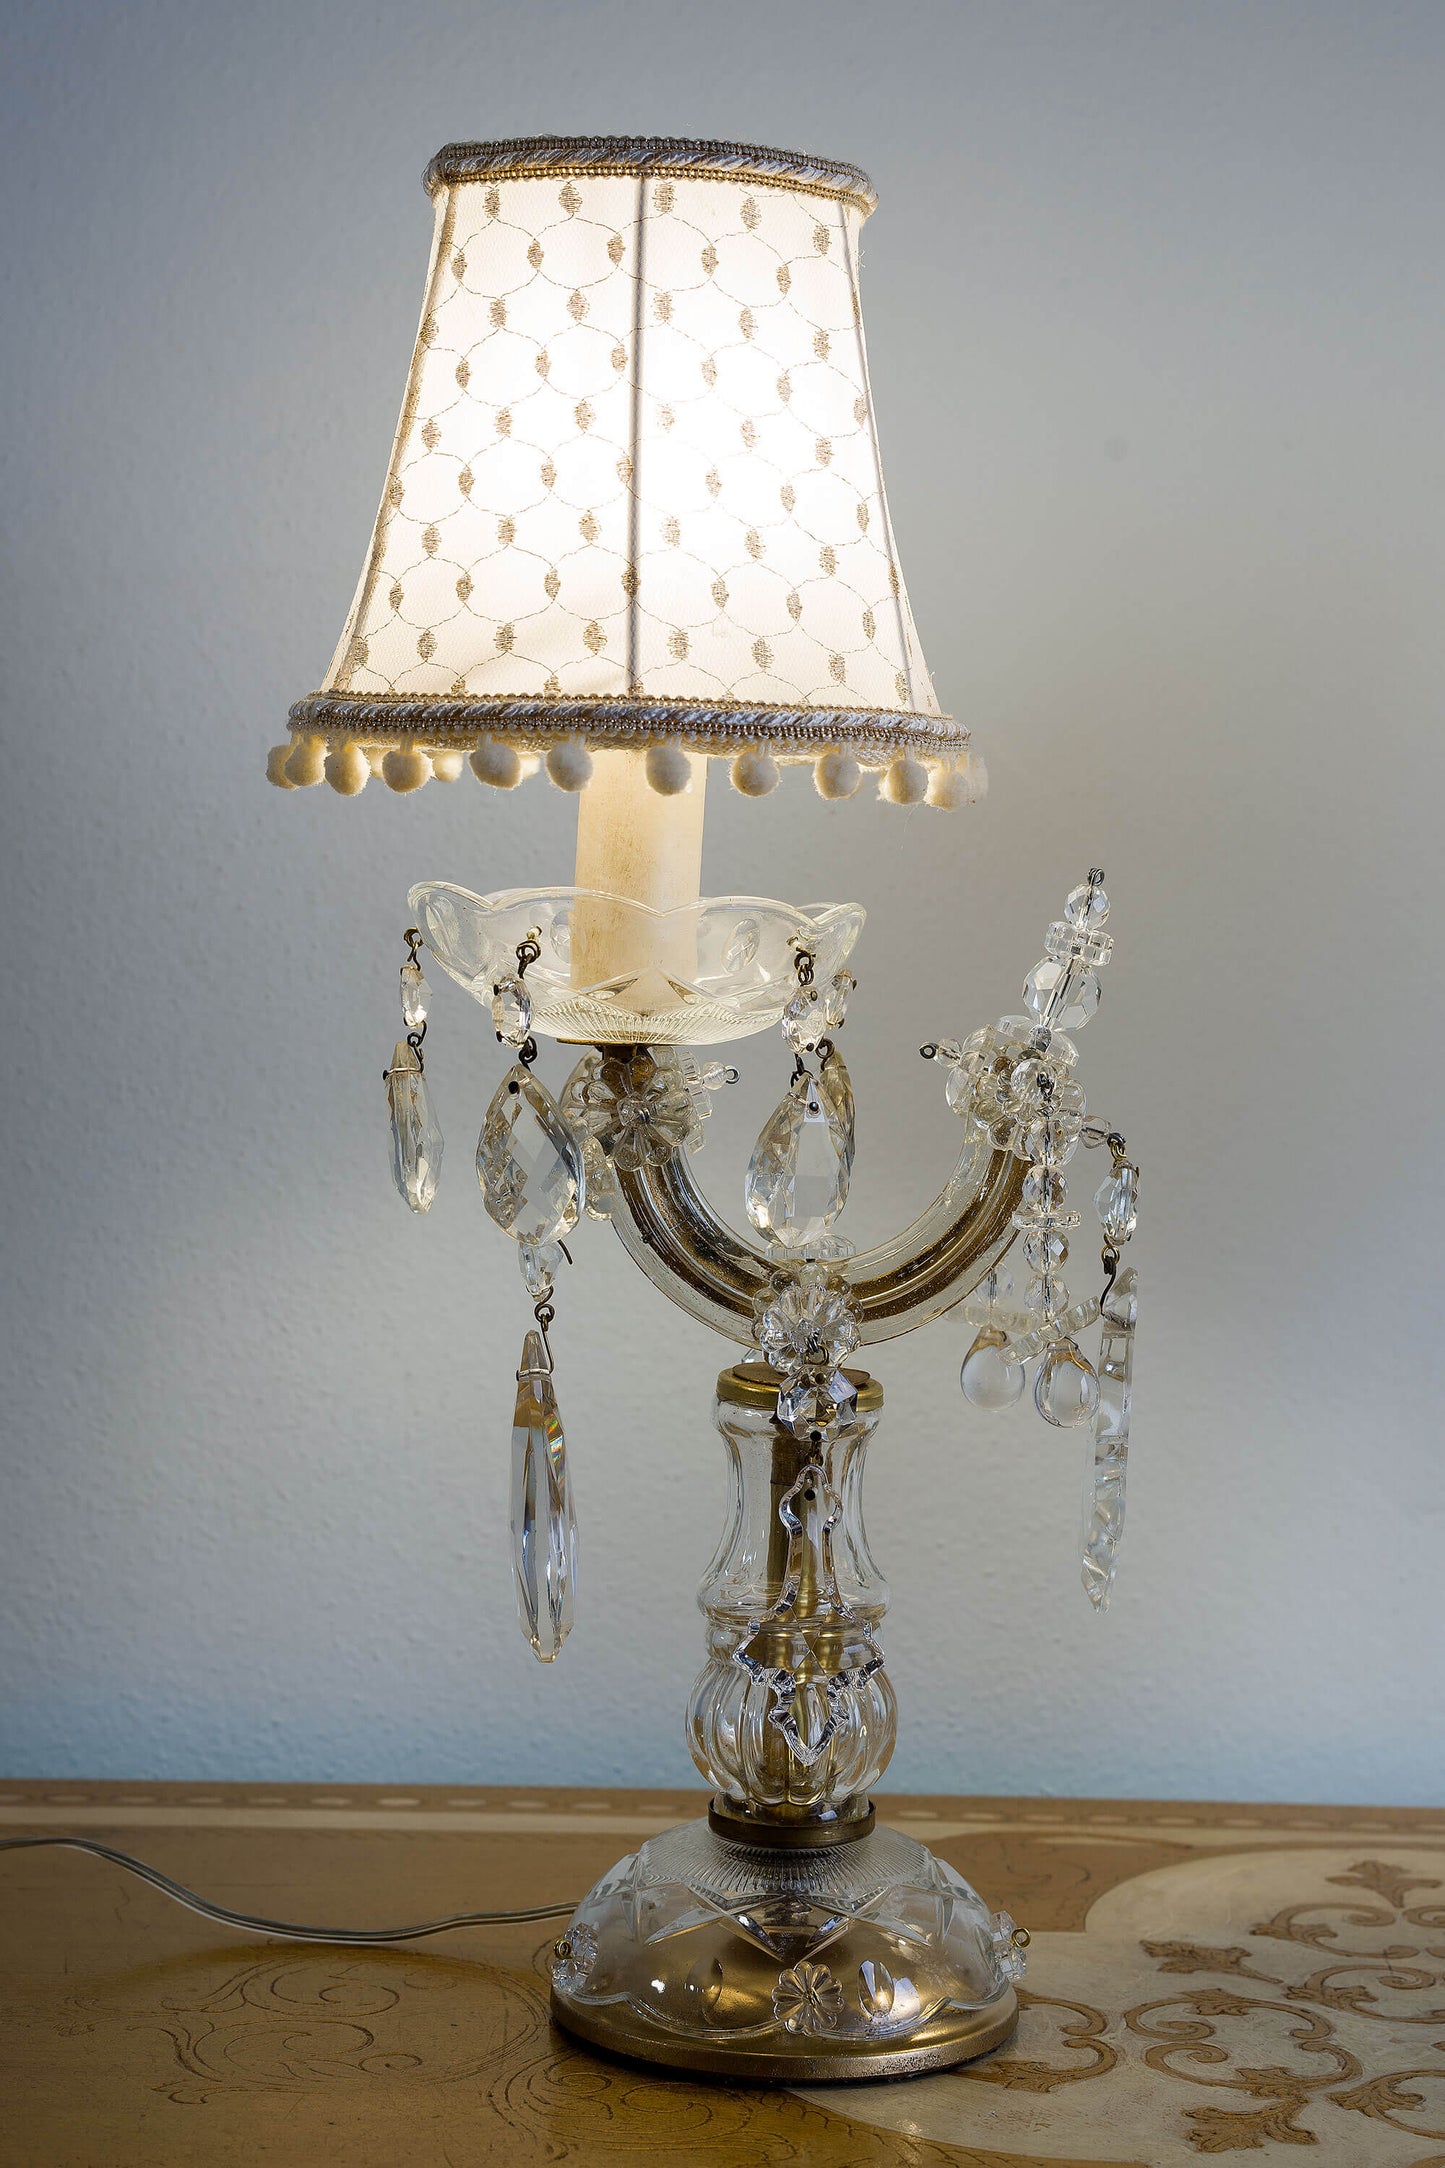 Dettagli dorati e cristallo scintillante: le lampade Maria Teresa sono un capolavoro di design. Il restauro completo assicura un'illuminazione perfetta e duratura.| Lo Stile Italiano